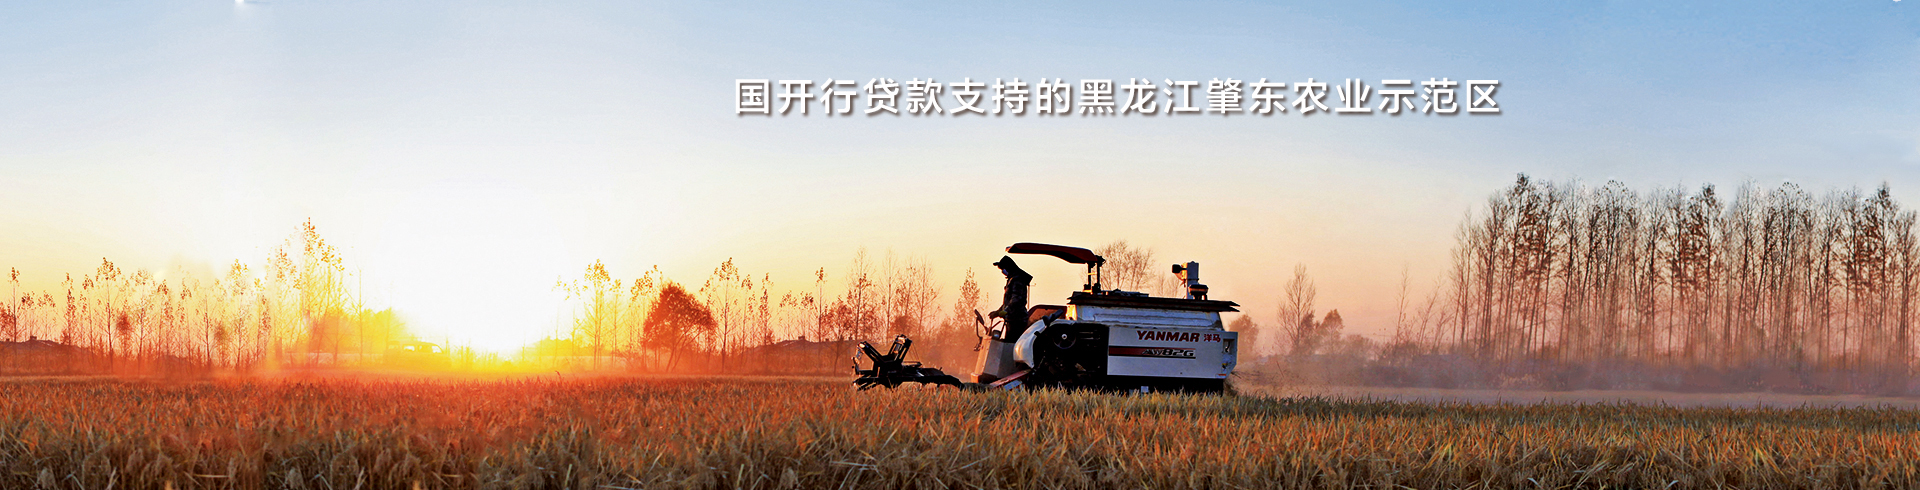 国开行贷款支持的黑龙江肇东农业示范区